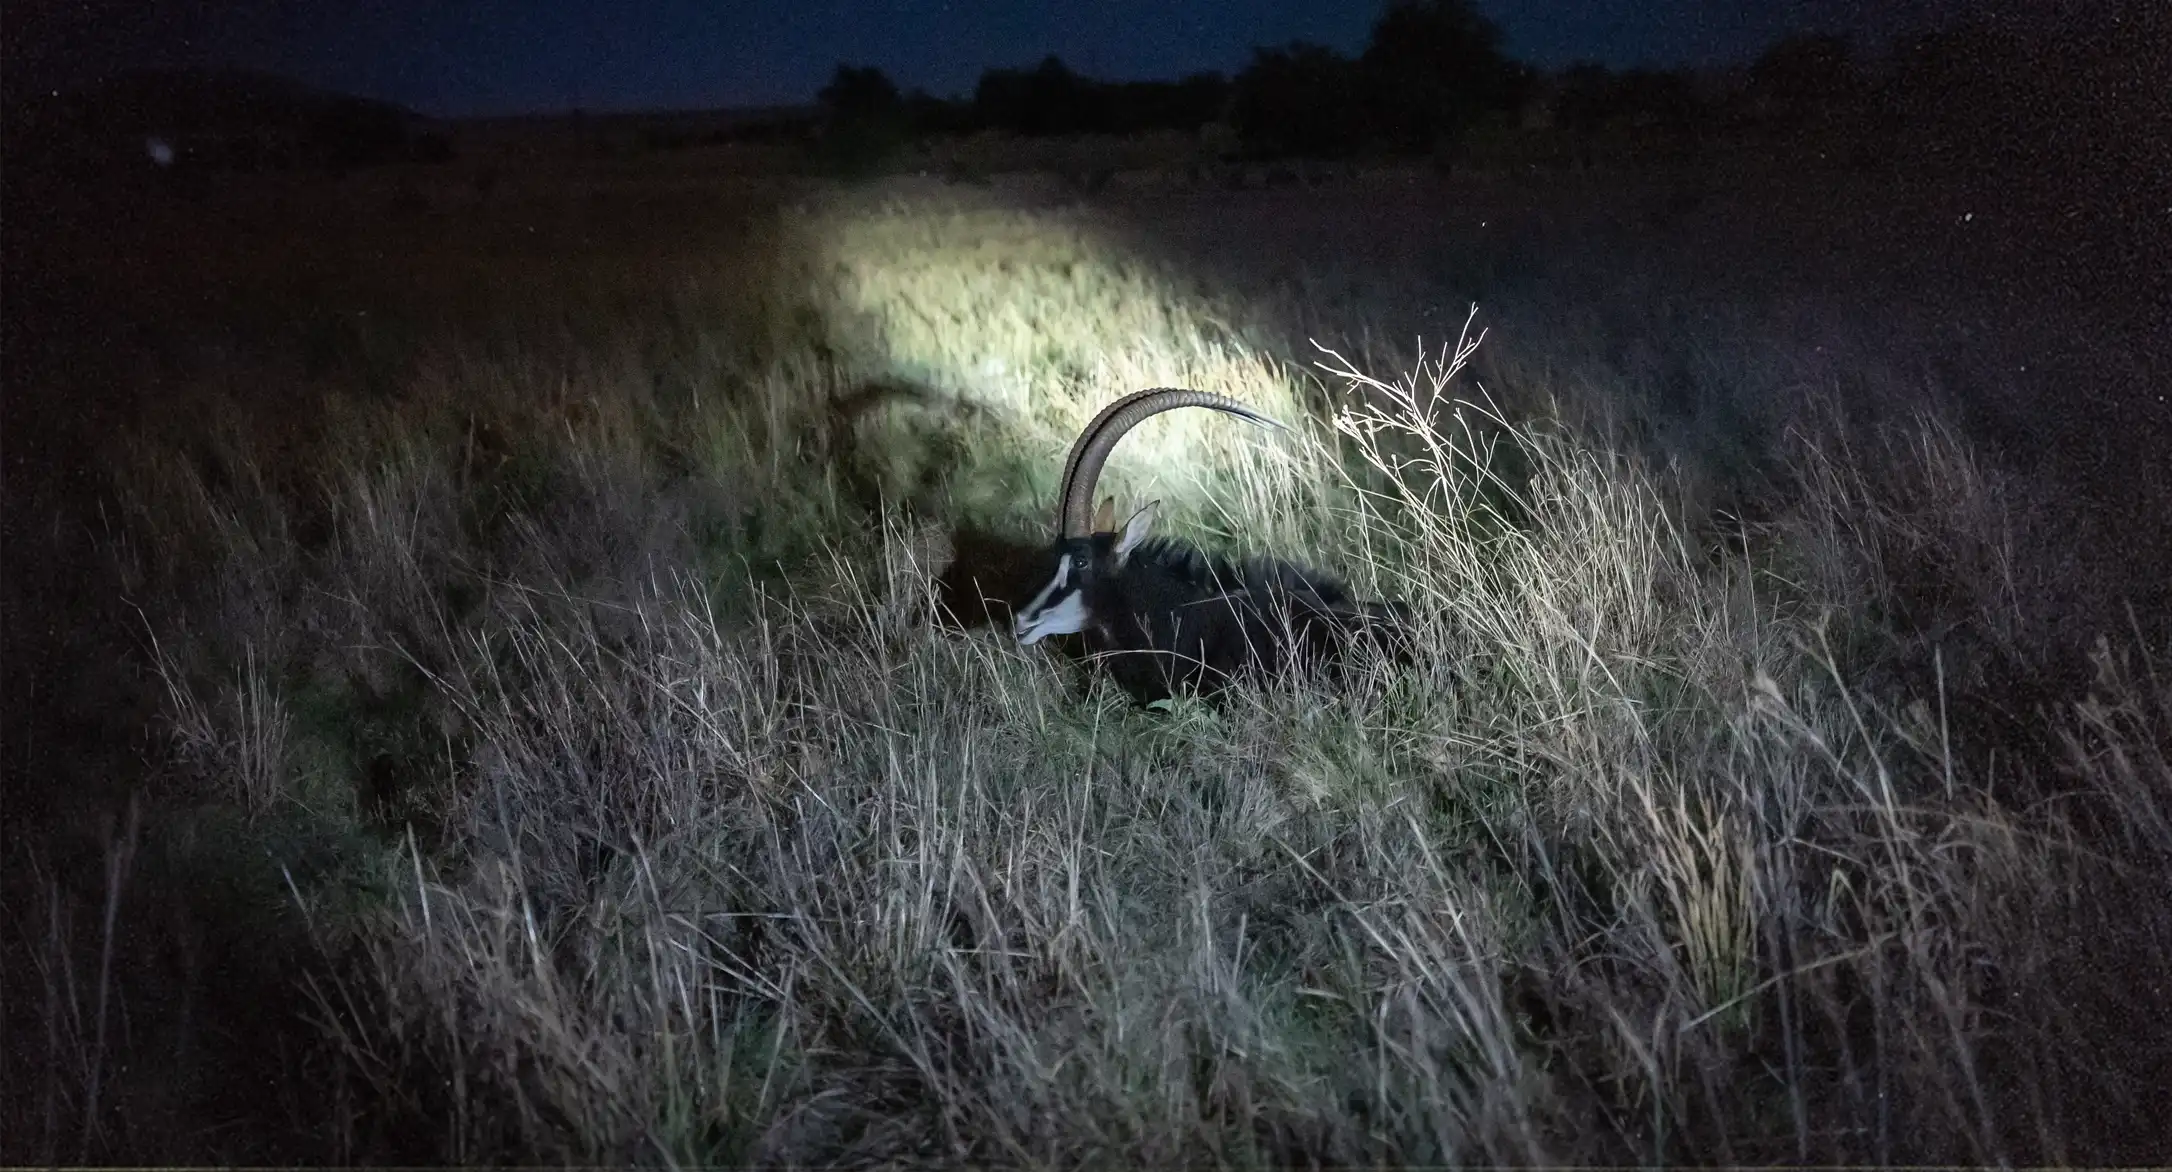 Nachtaufnahme einer männliche Rappenantilope im hohen Gras, vom Scheinwerfer beleuchtet.